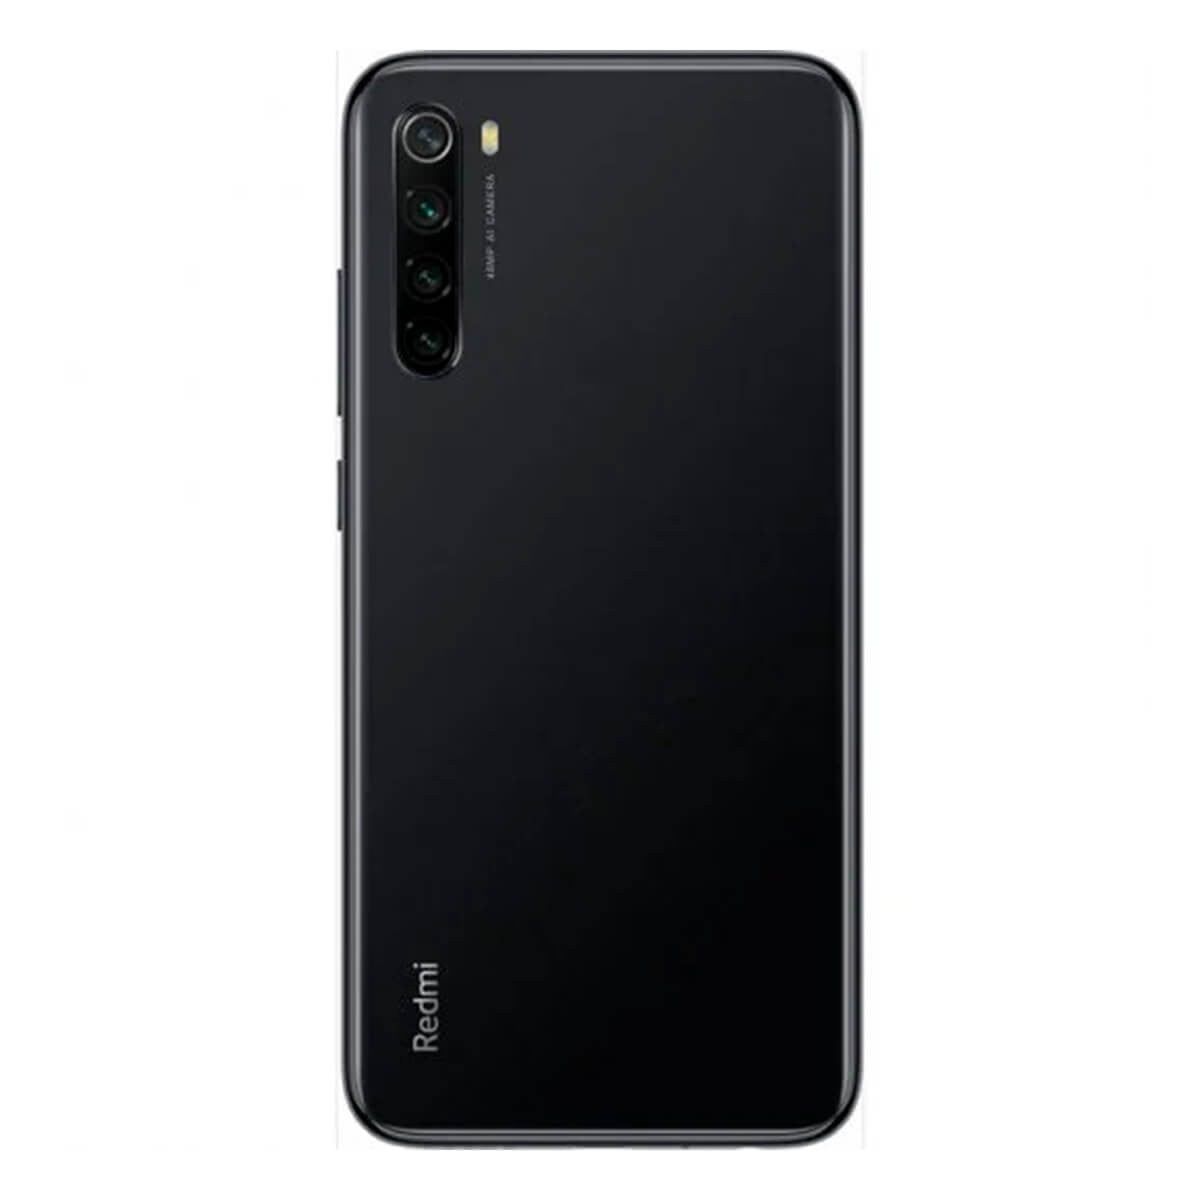 Xiaomi Redmi Note 8 (2021) 4GB/64GB Negro (Space Black) Dual SIM M1908C3JGG Smartphone | Xiaomi